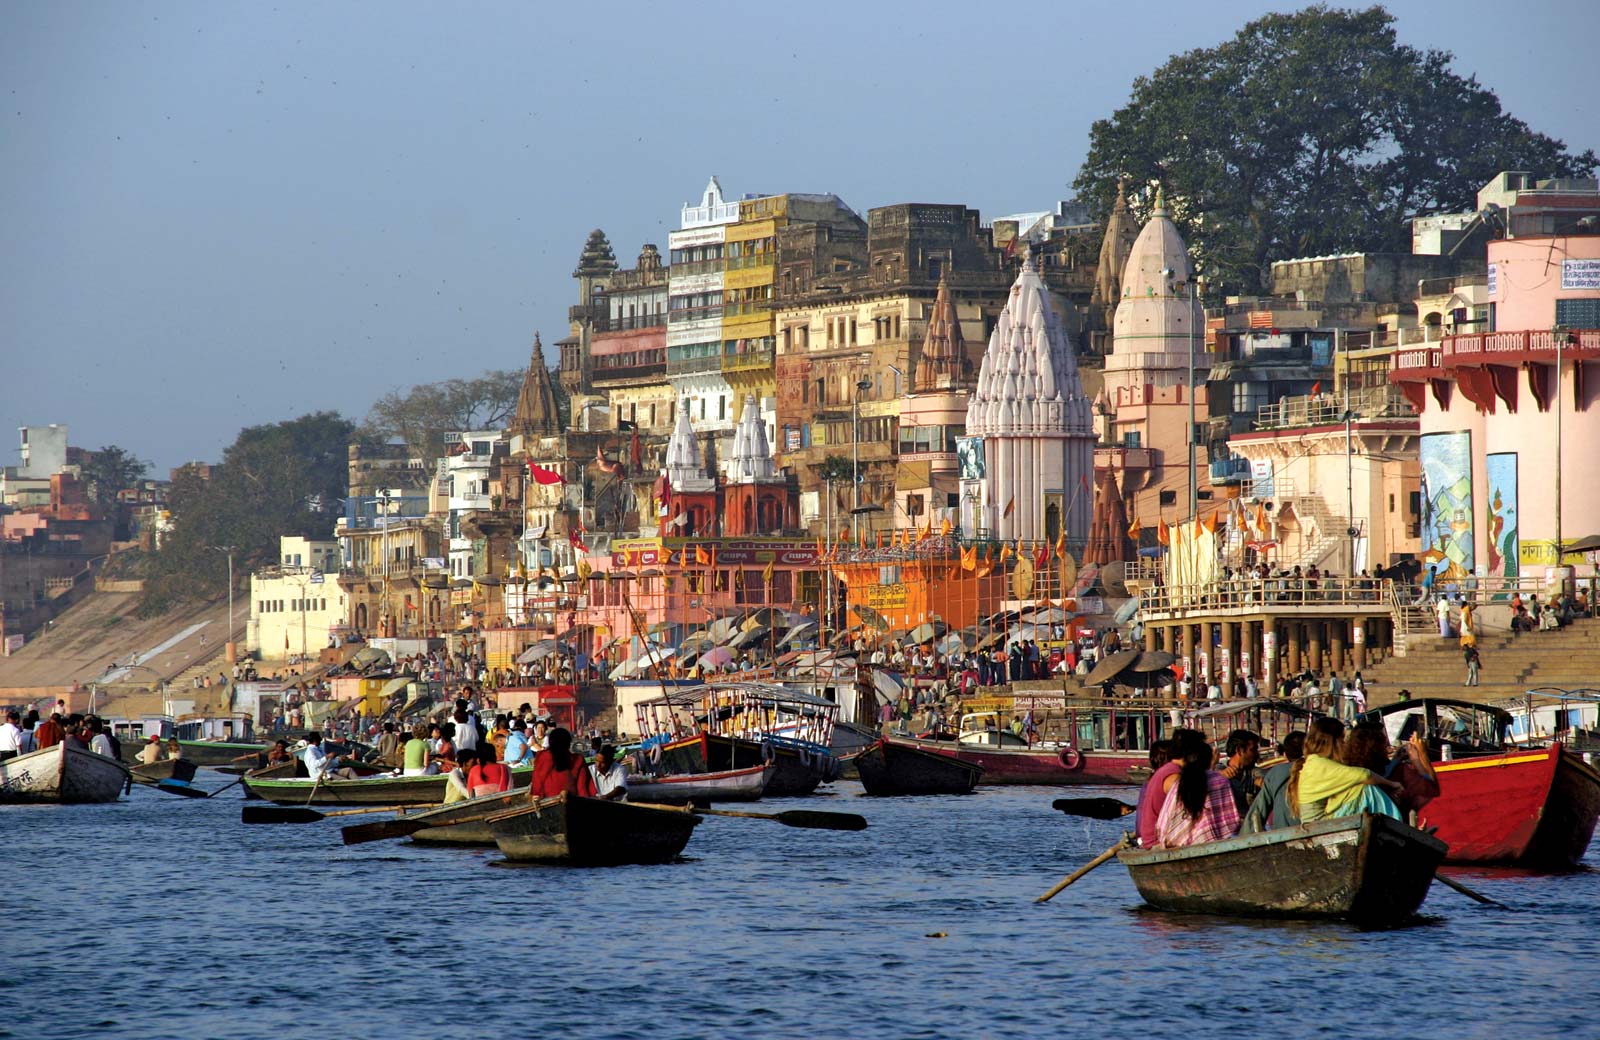 Boats-Varanasi-Ganges-River-India-Uttar-Pradesh.jpg